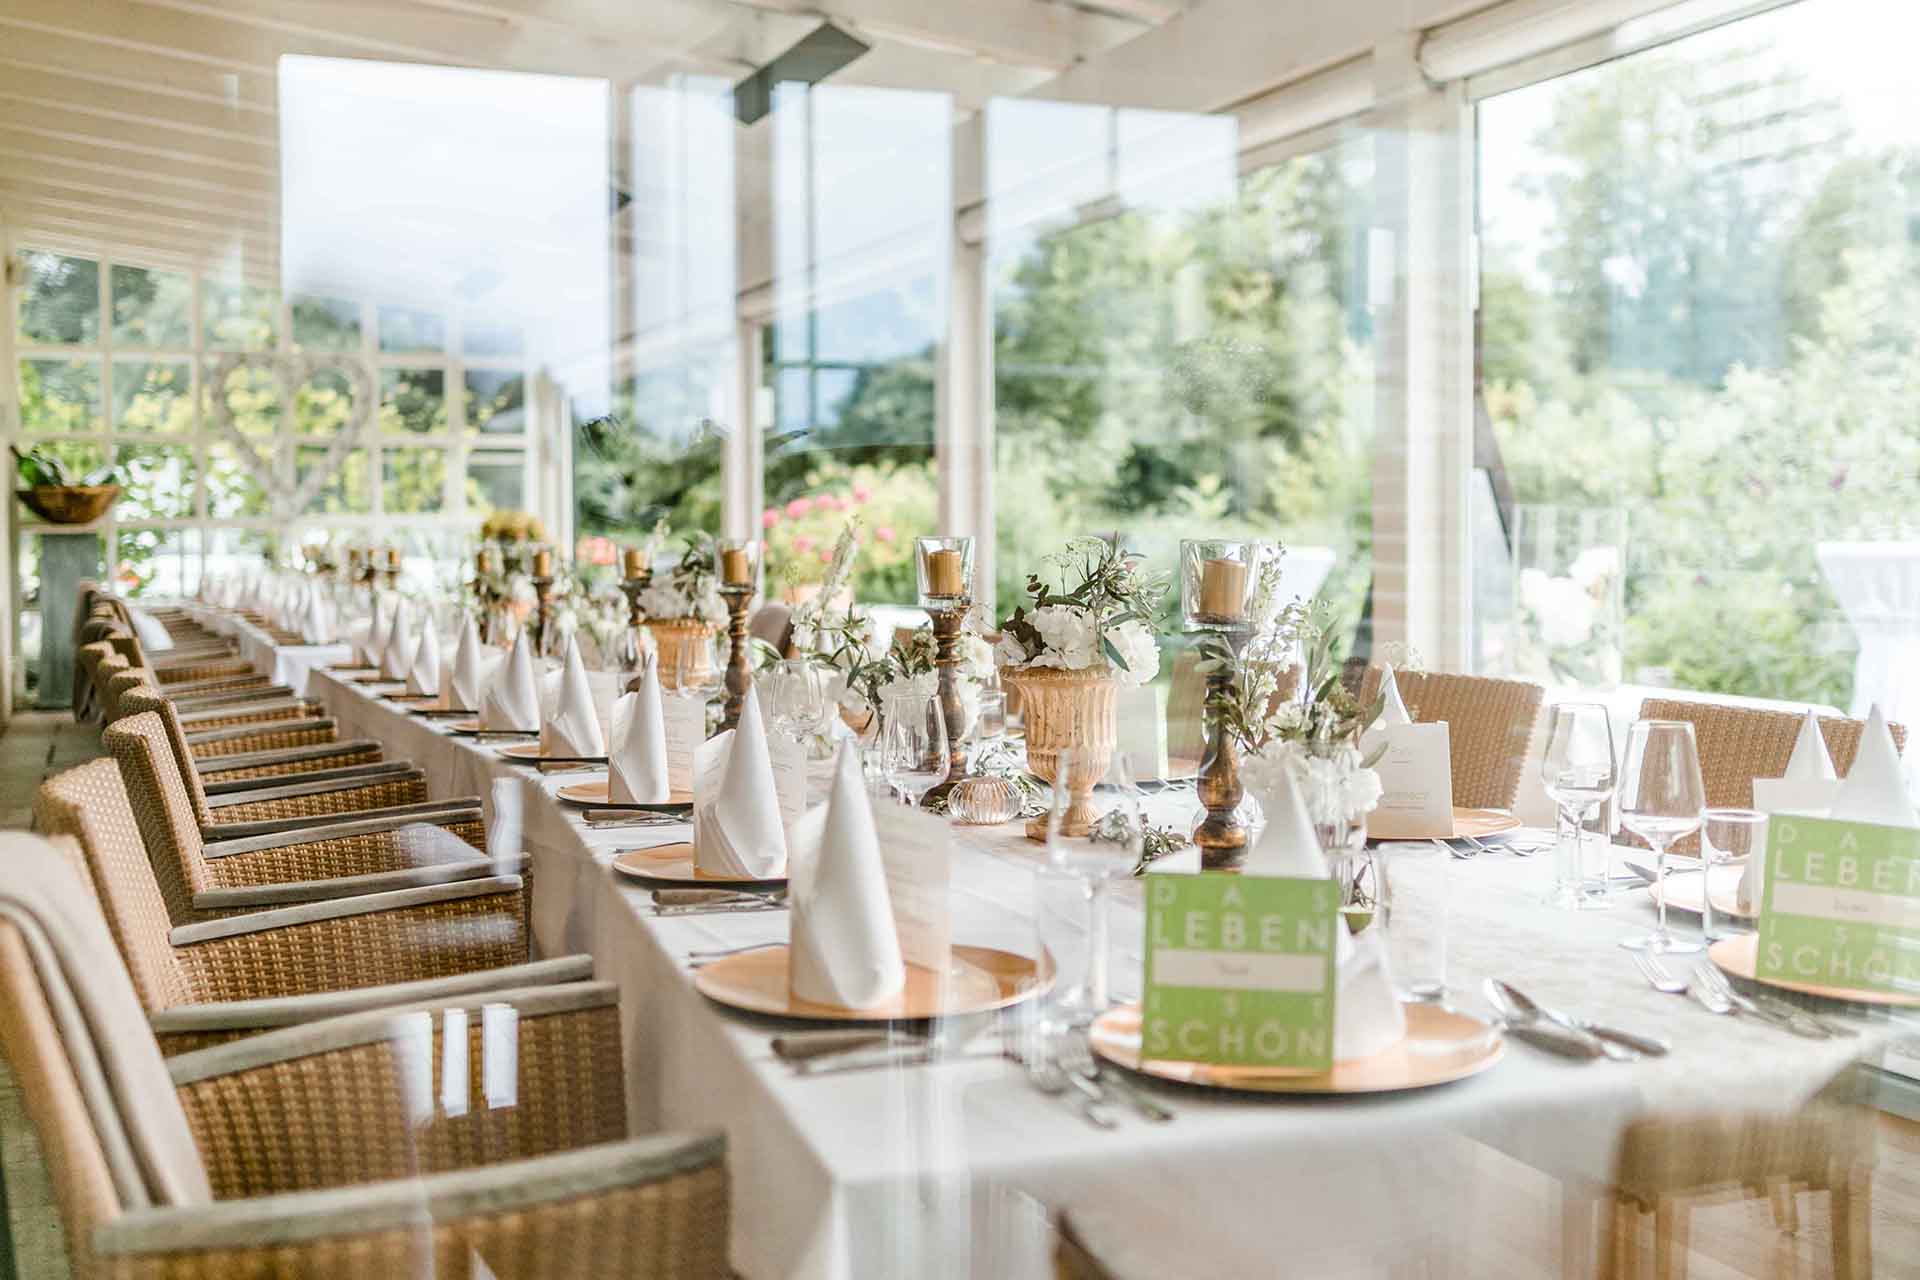 10 Top Hochzeitslocations In Der Zentralschweiz 2020